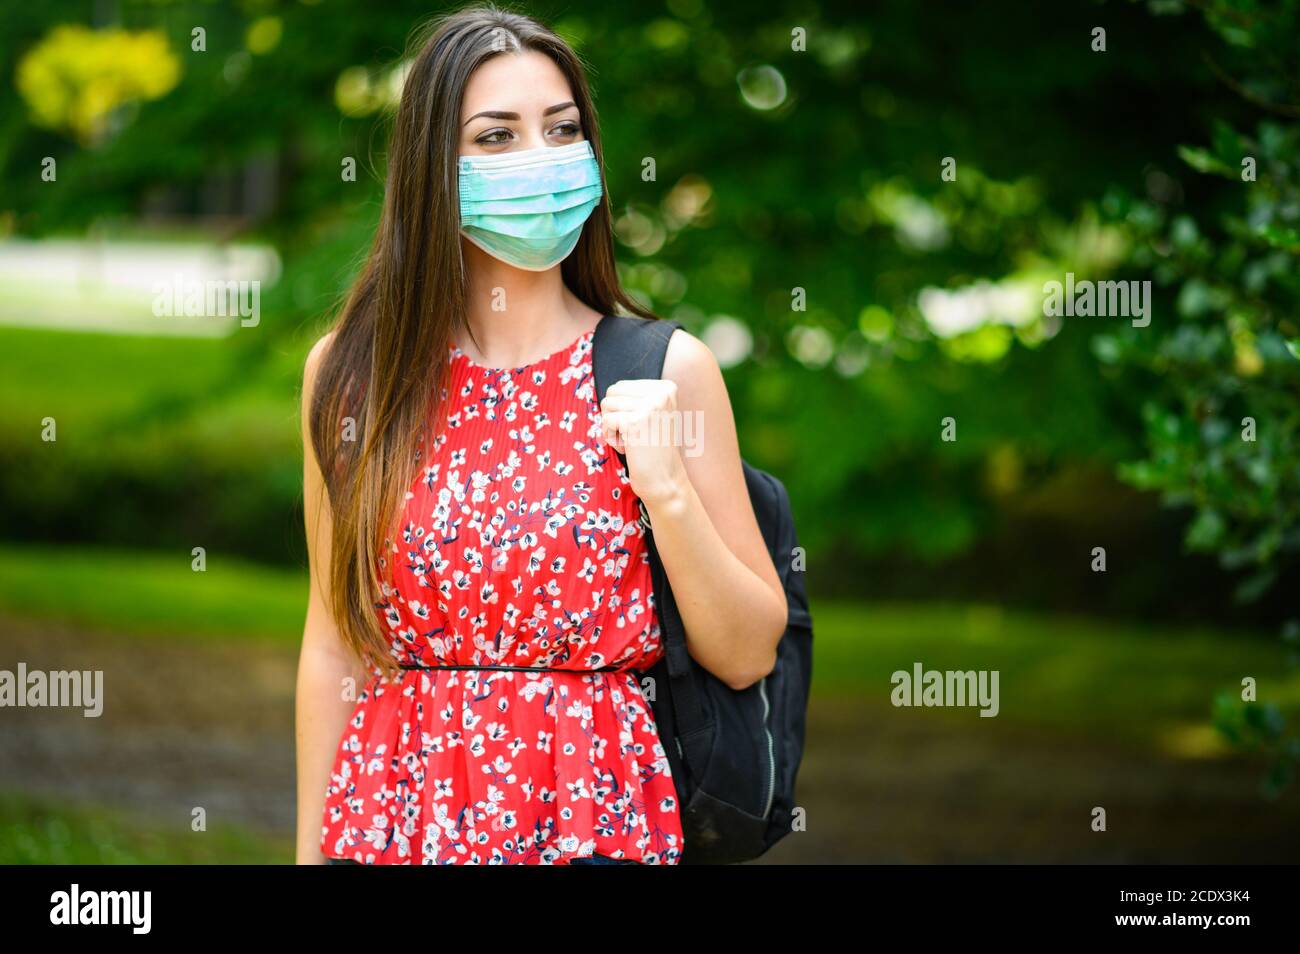 Une étudiante marchant à l'extérieur dans le parc et portant un masque pour se protéger du coronavirus Banque D'Images